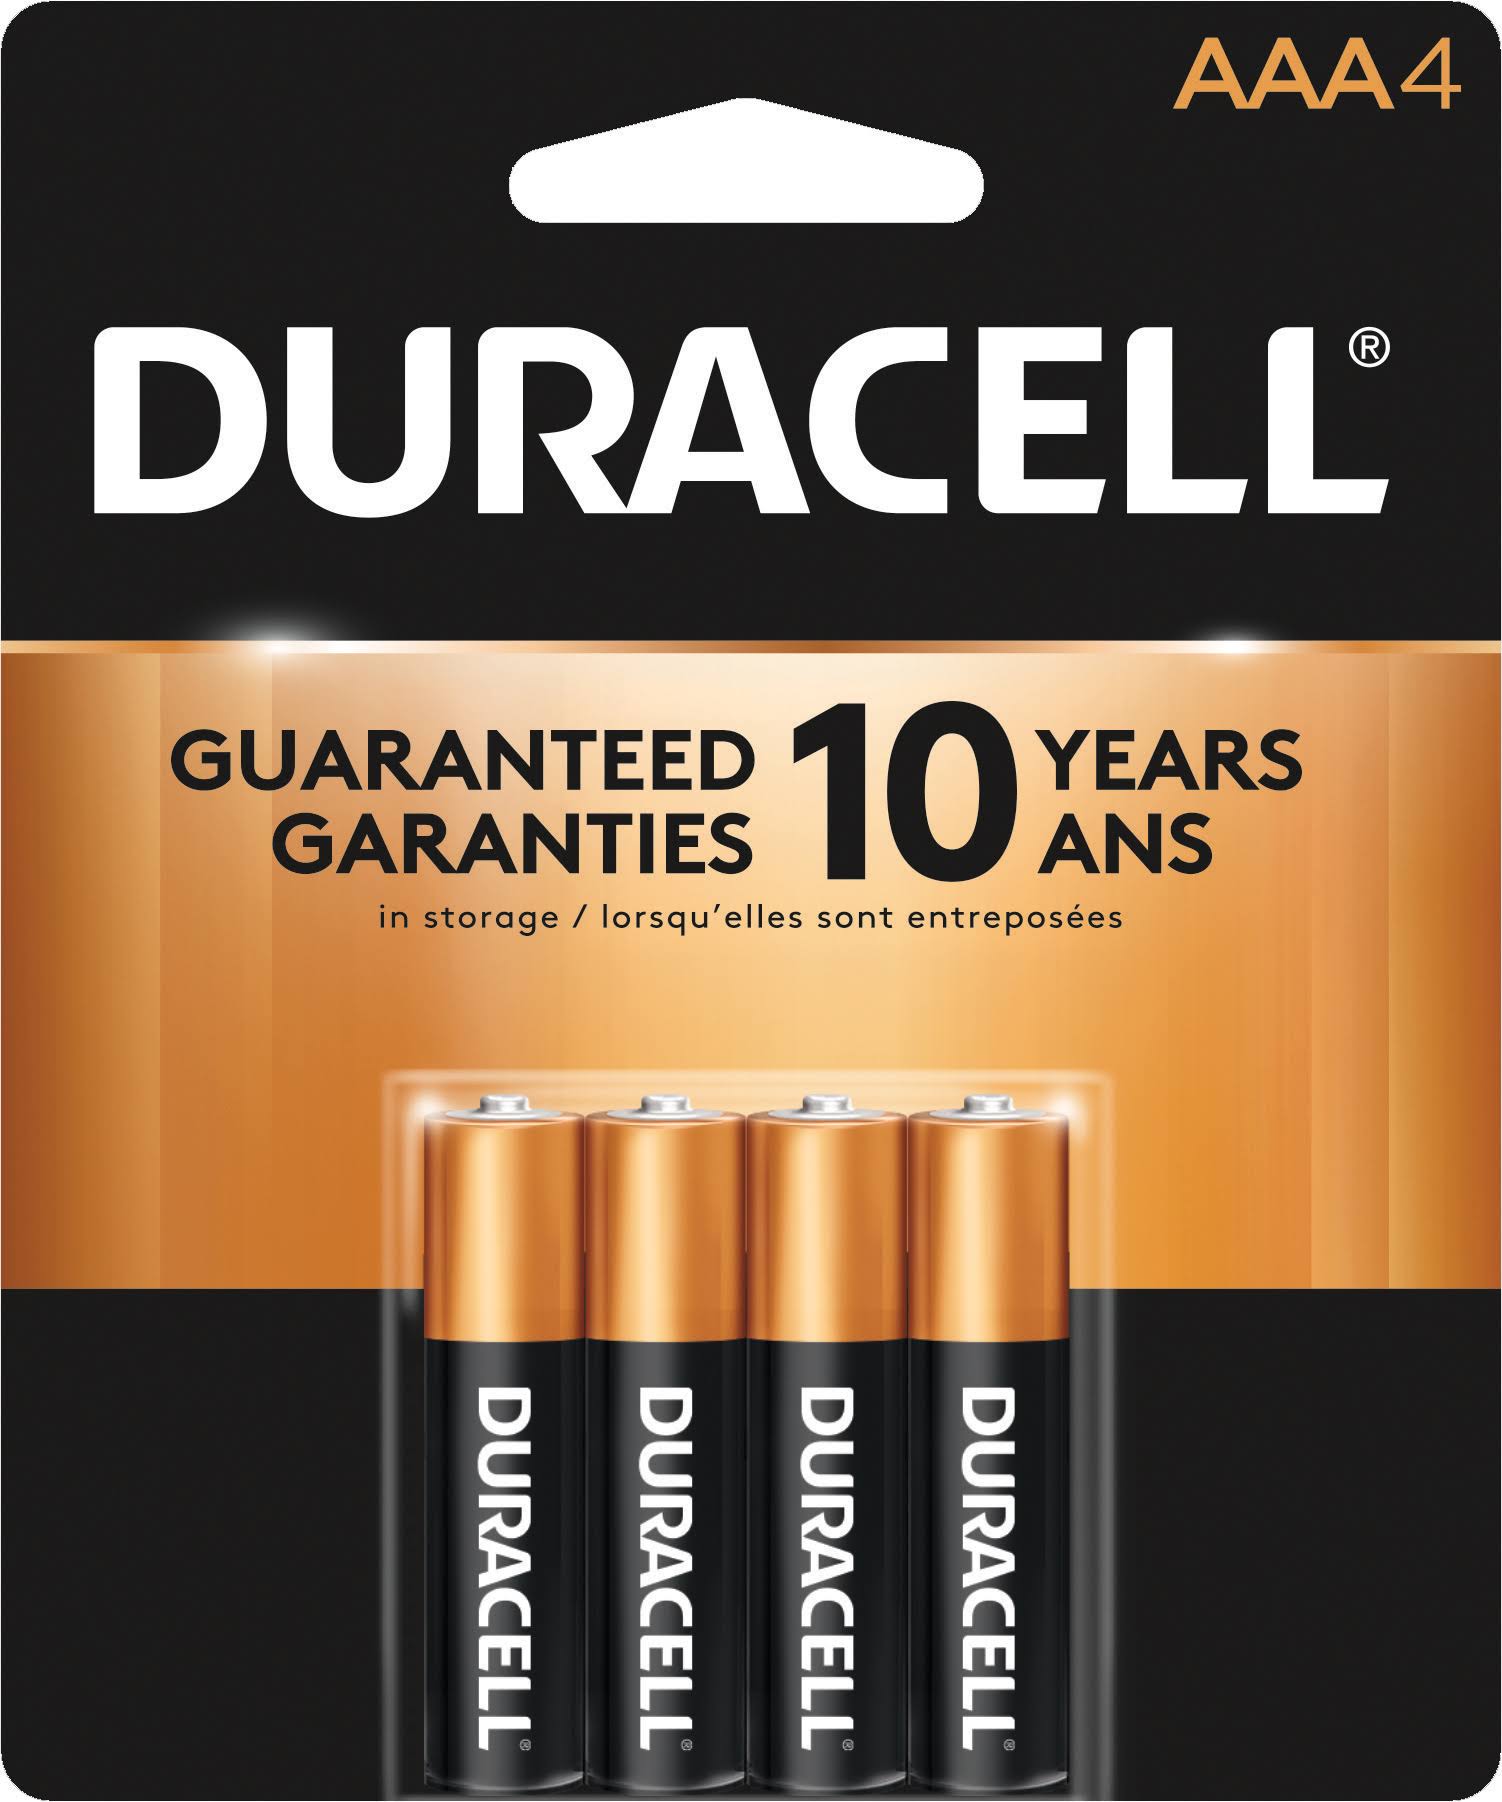 Duracell AAA Alkaline Batteries - 4 pack